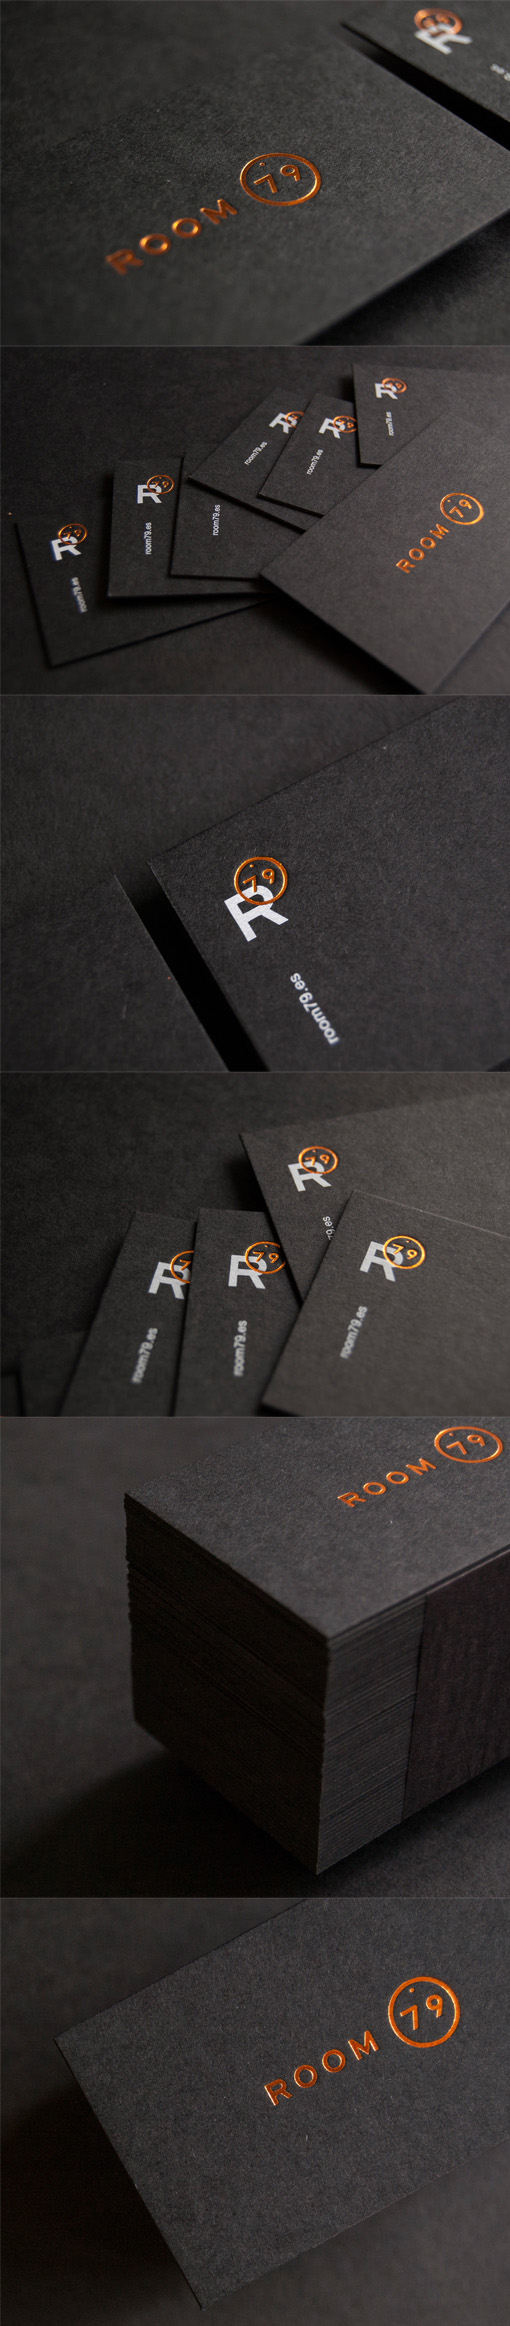 Sleek Black And Copper Foil Business Card Design